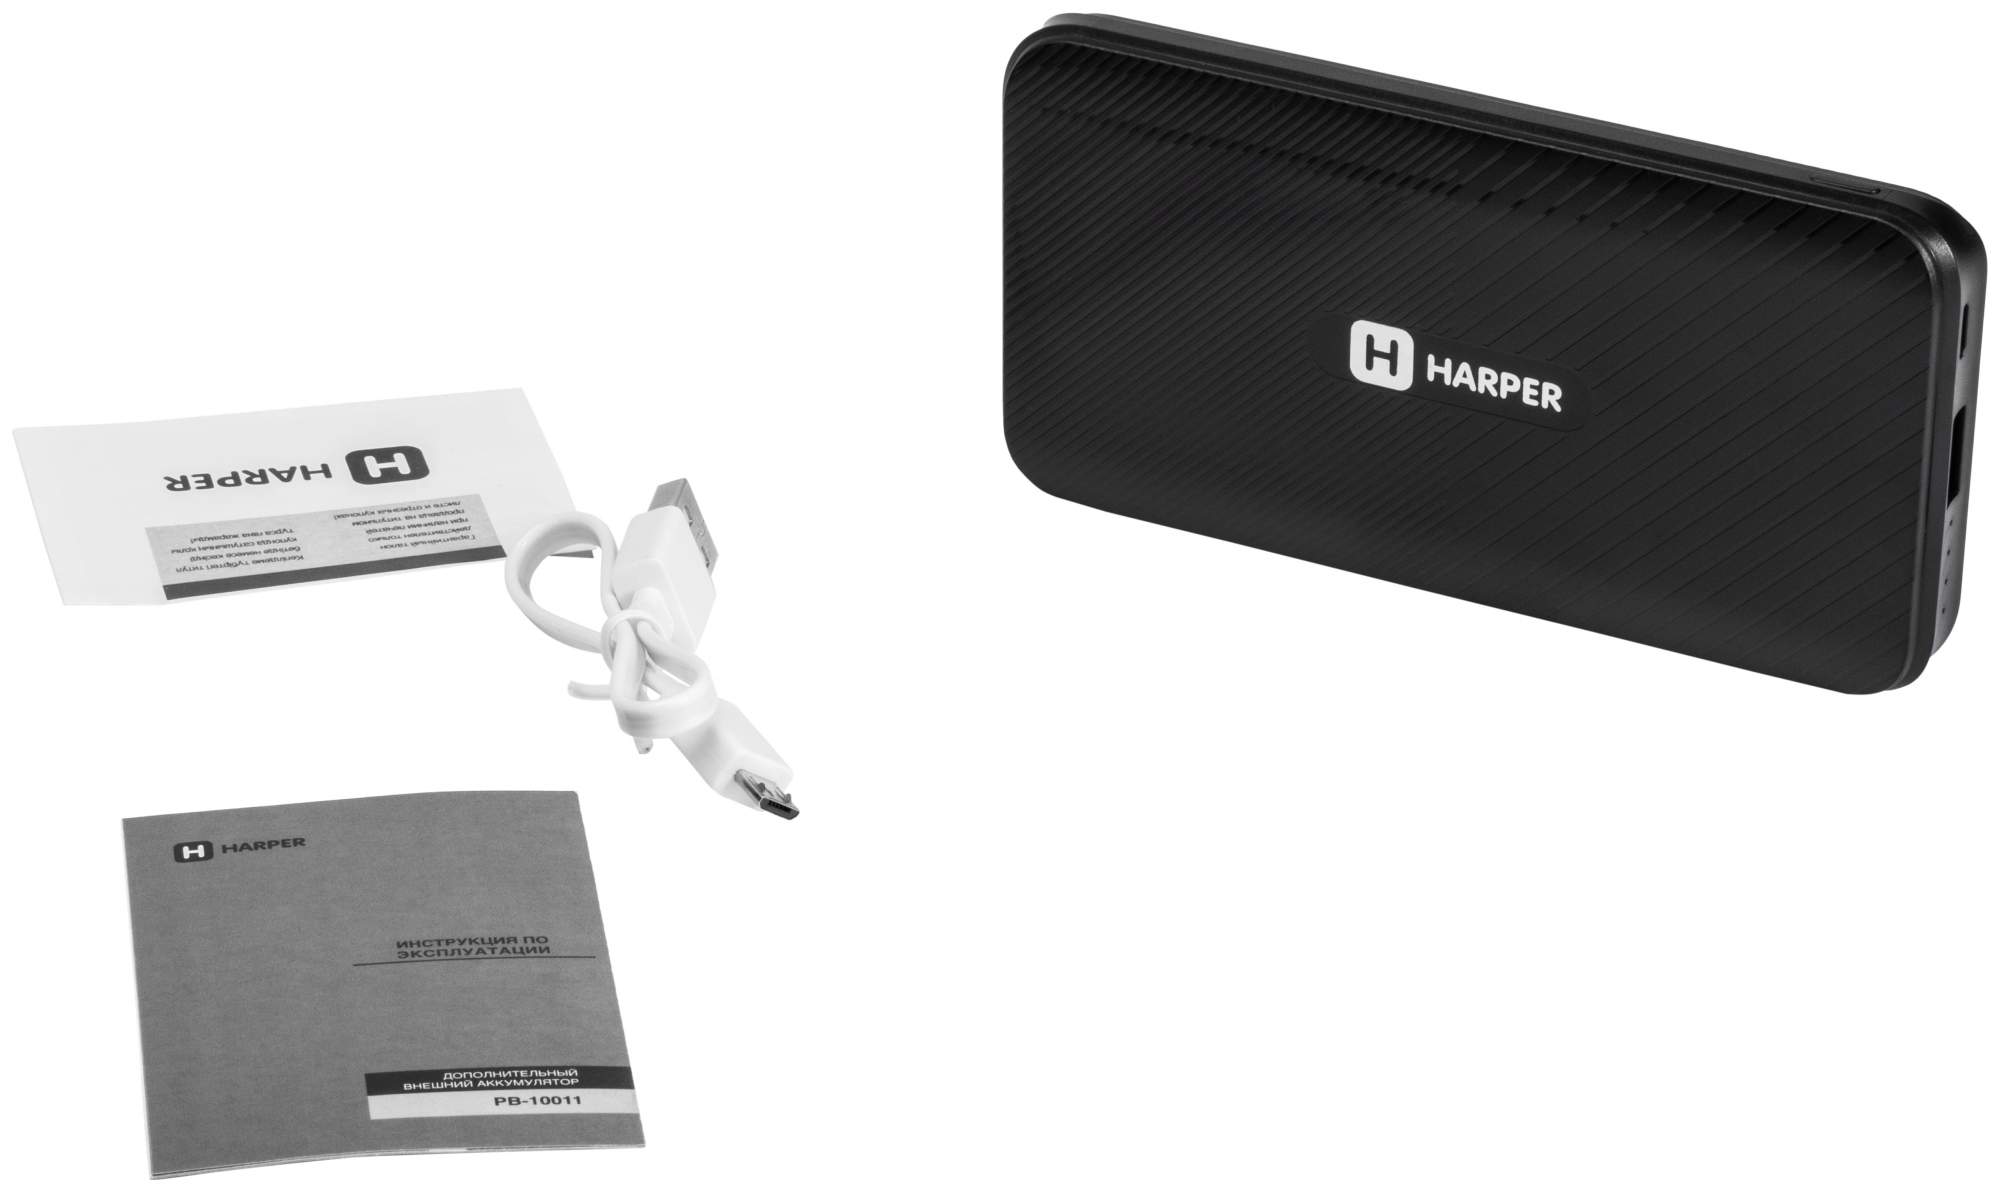 Внешний аккумулятор Harper PB-10011 10000 мА/ч (H00002051) Black